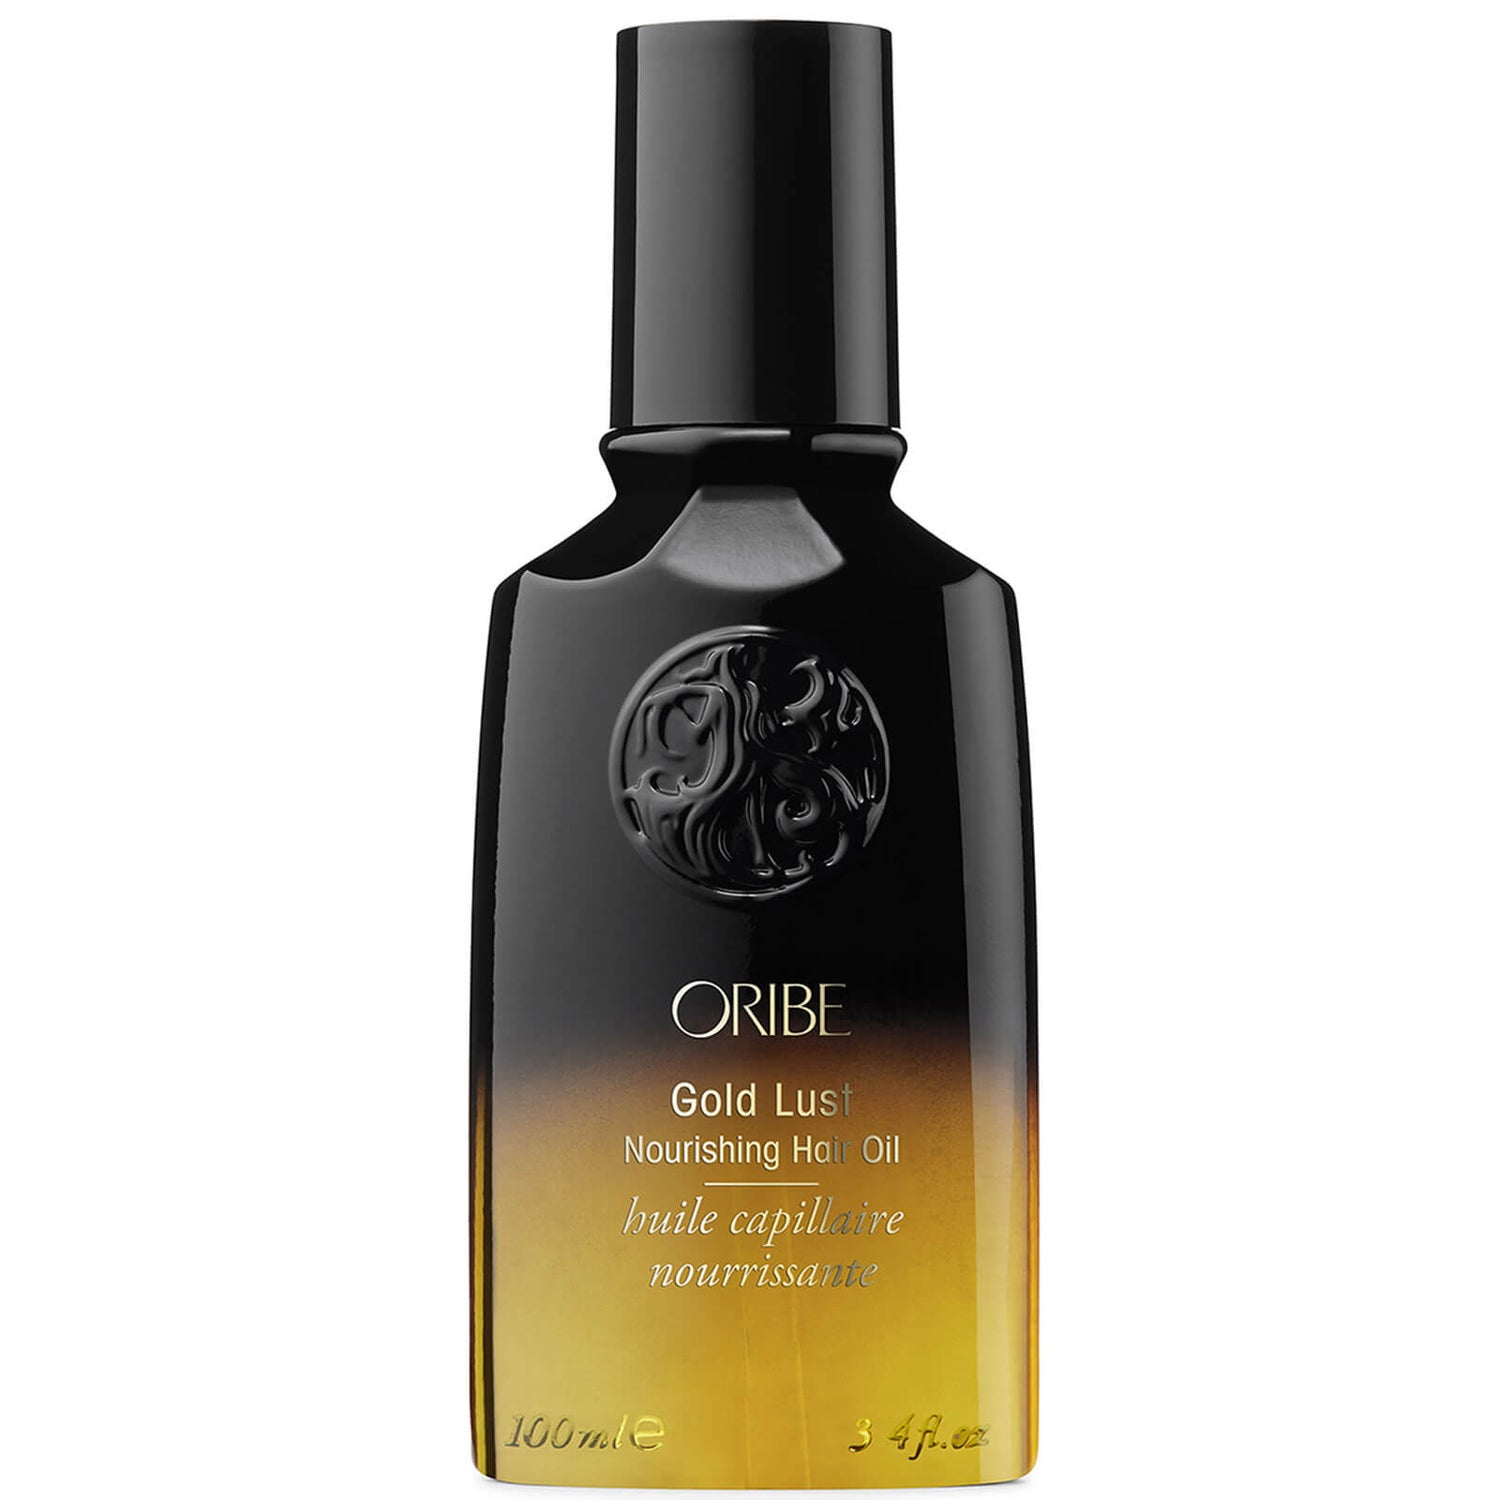 Oribe Gold Lust Nourishing Hair Oil (3.4 fl. oz.)